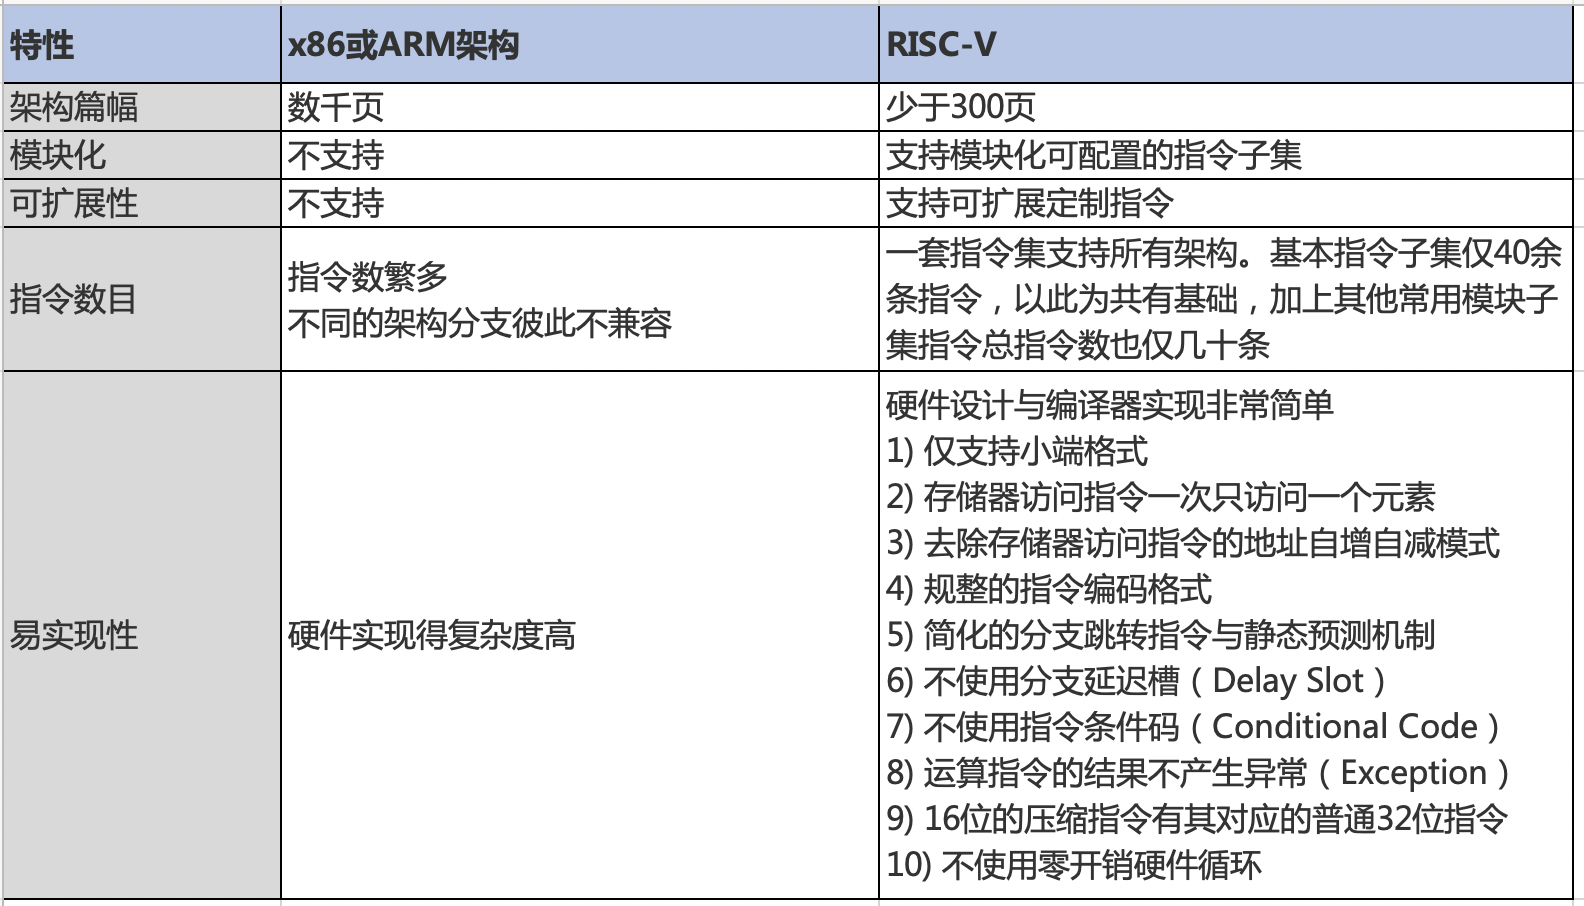 CH2601 单片机芯片及应用-RISC-V生态架构浅析(认识RISC-V)risc-v单片机中文社区(6)